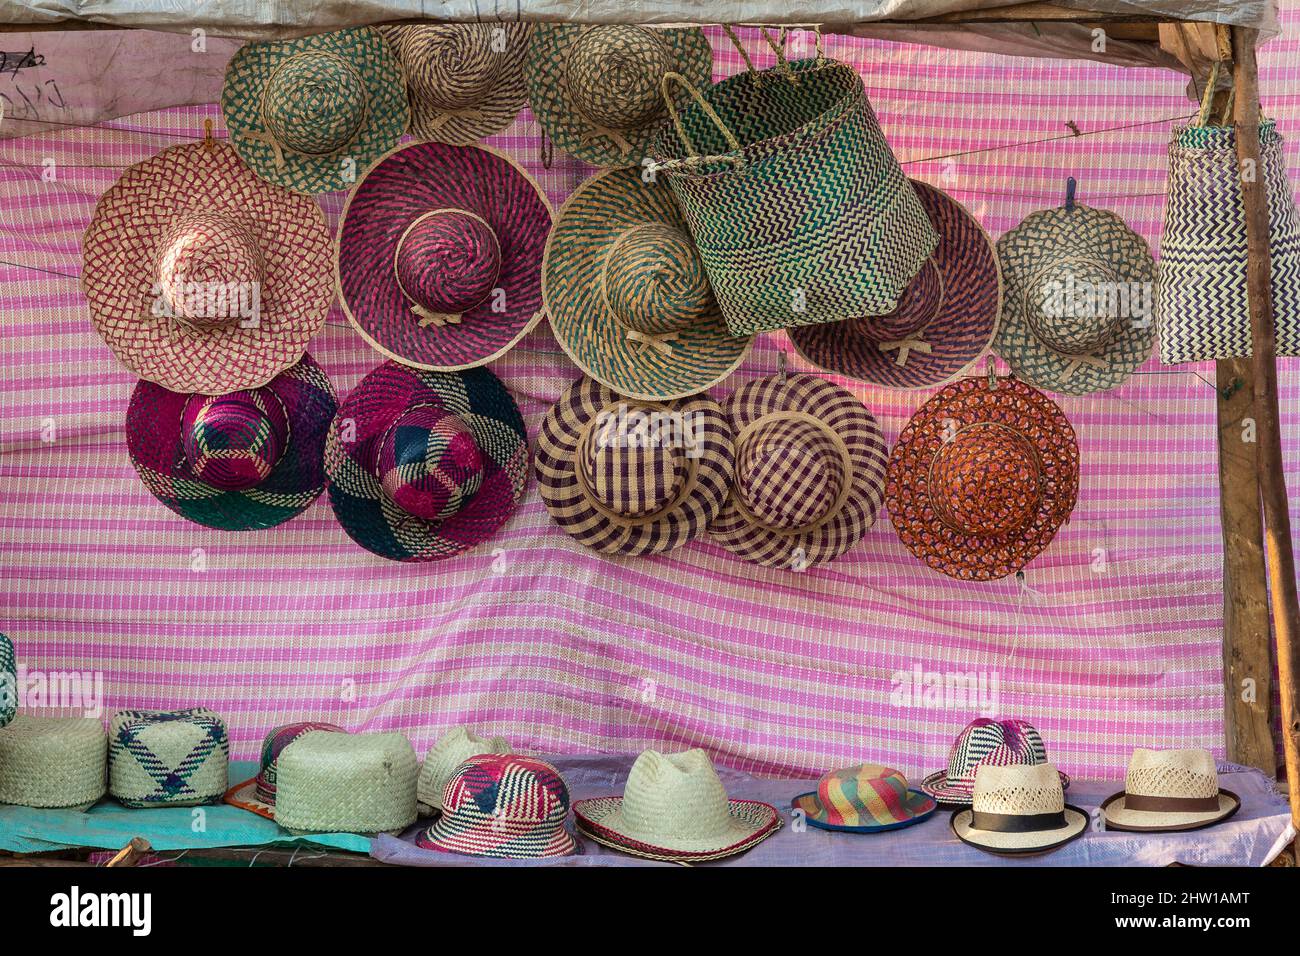 Madagascar Central: Sombreros tejidos y canastas a la venta Foto de stock